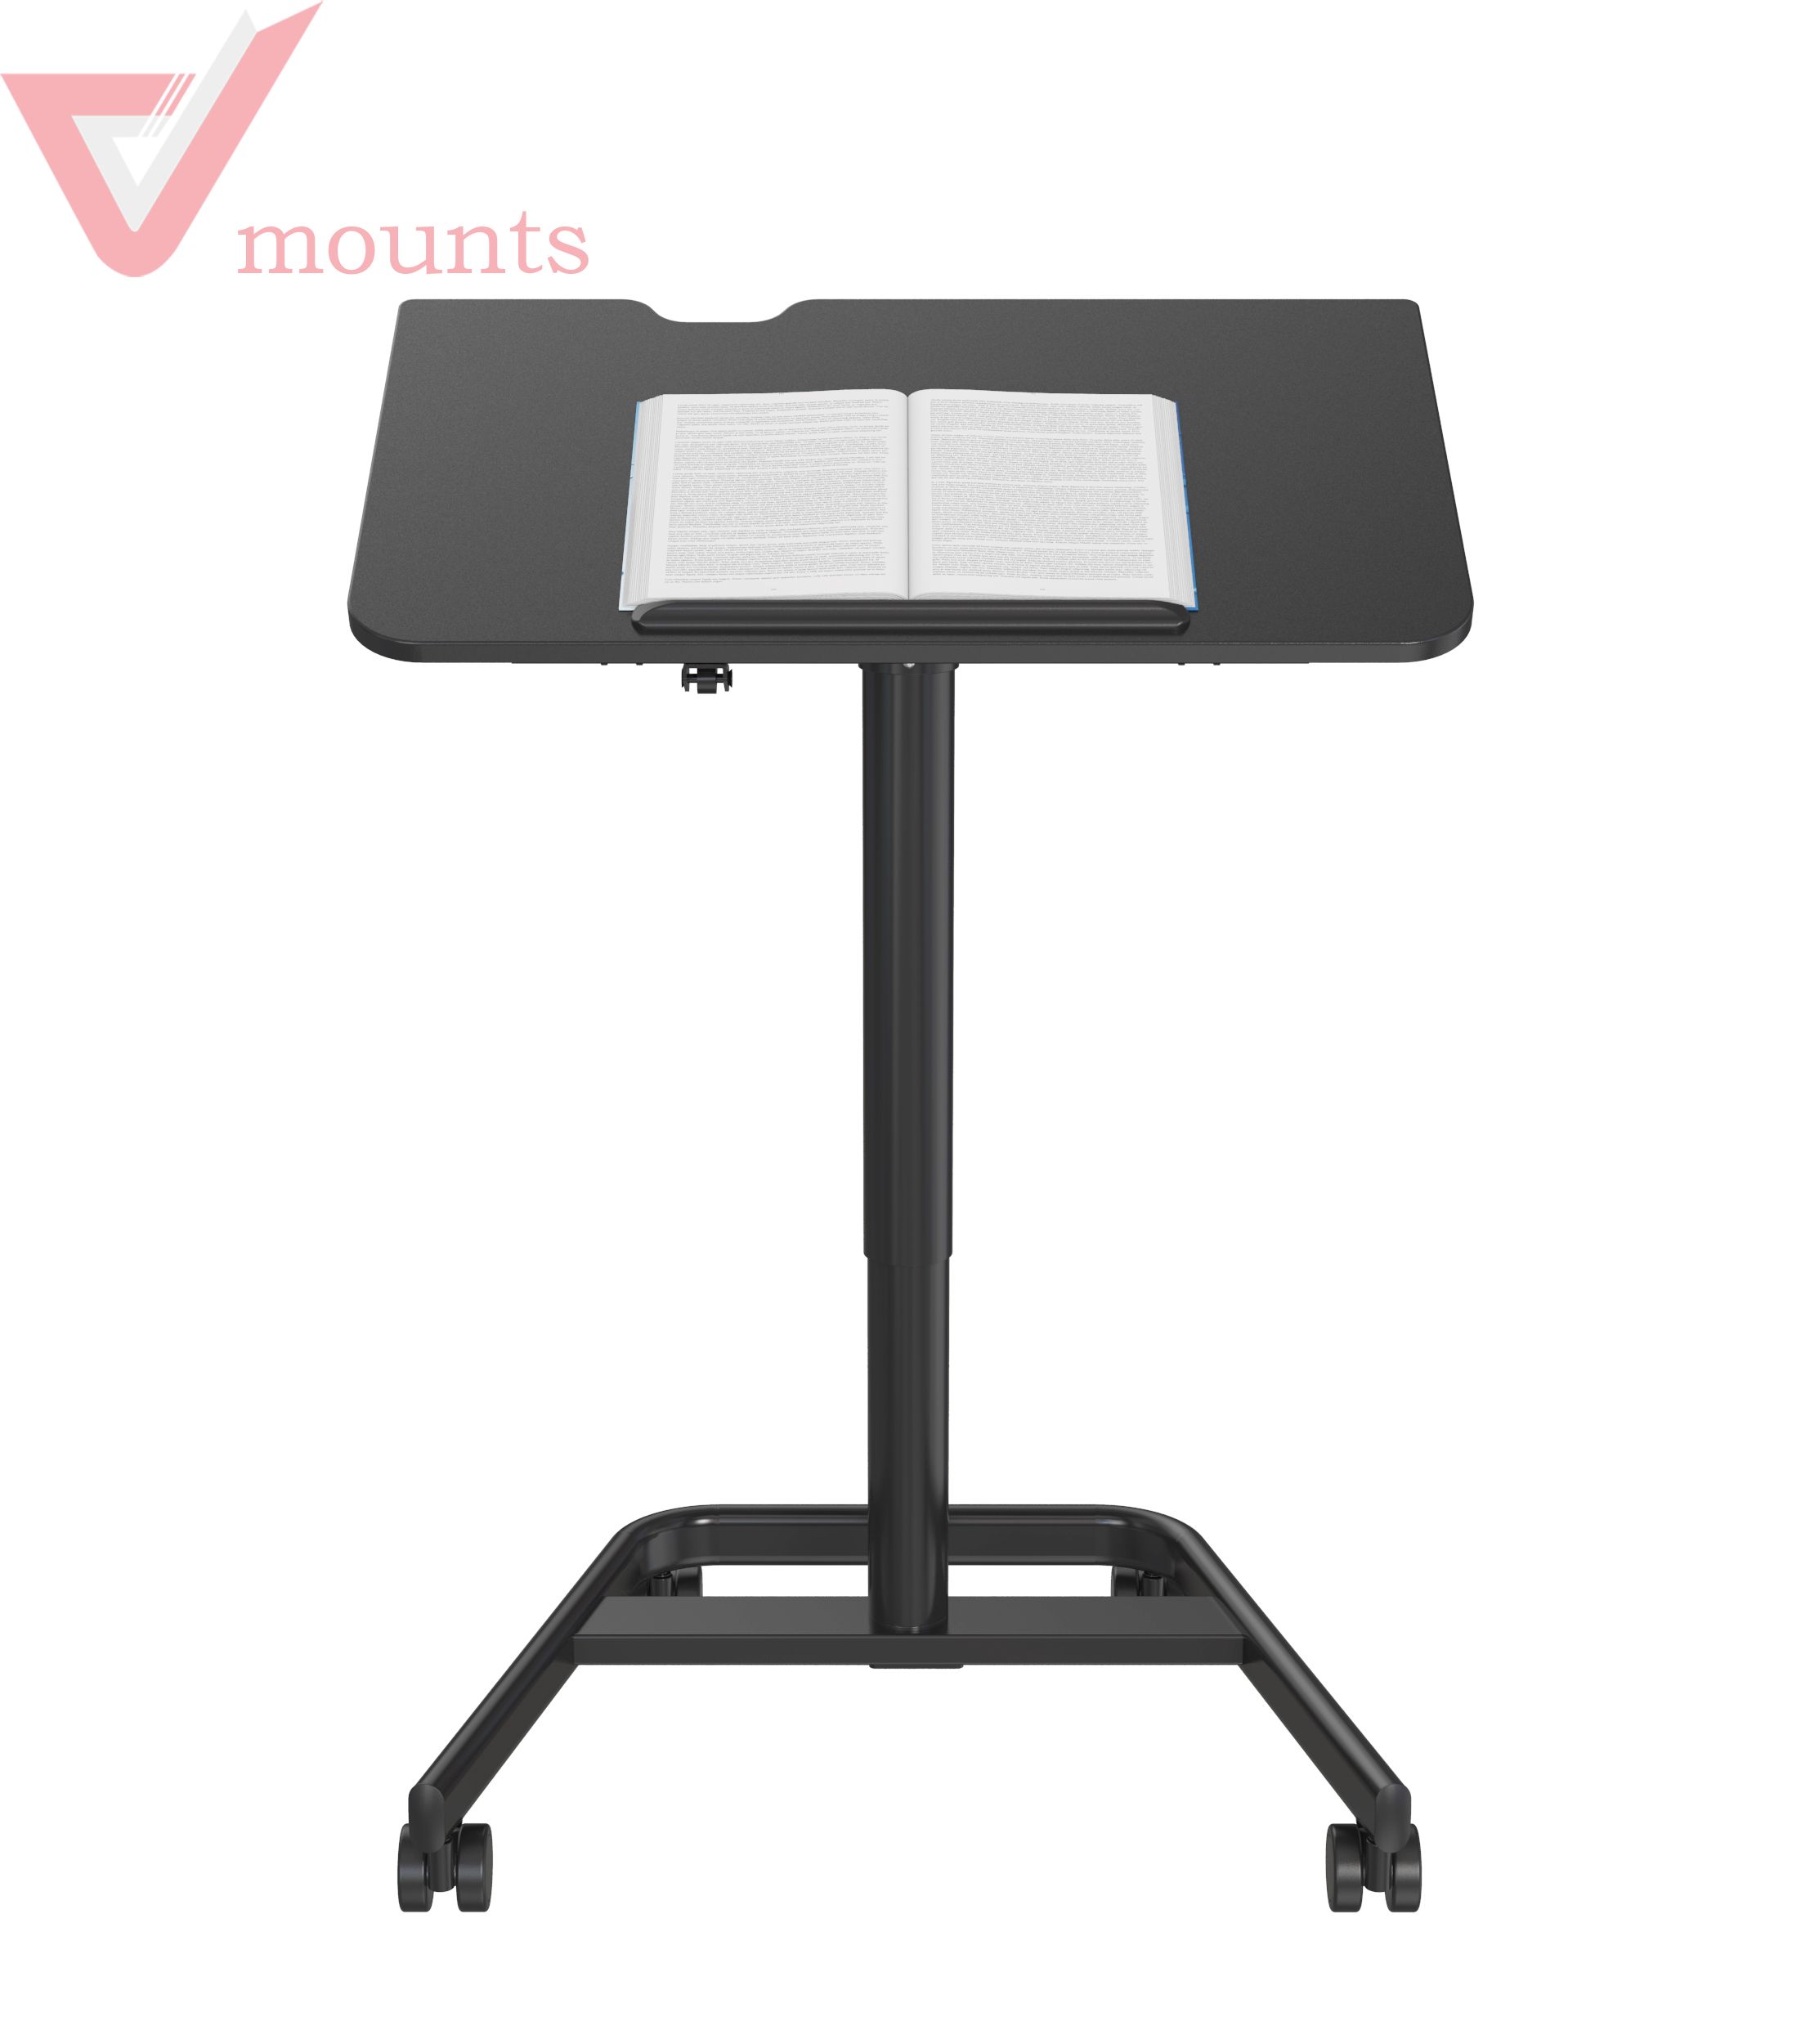 V-mounts SpaceErgo Mobile Tiltable Desktop Manual Height Adjustable Office Desk VM-FDS107D-2